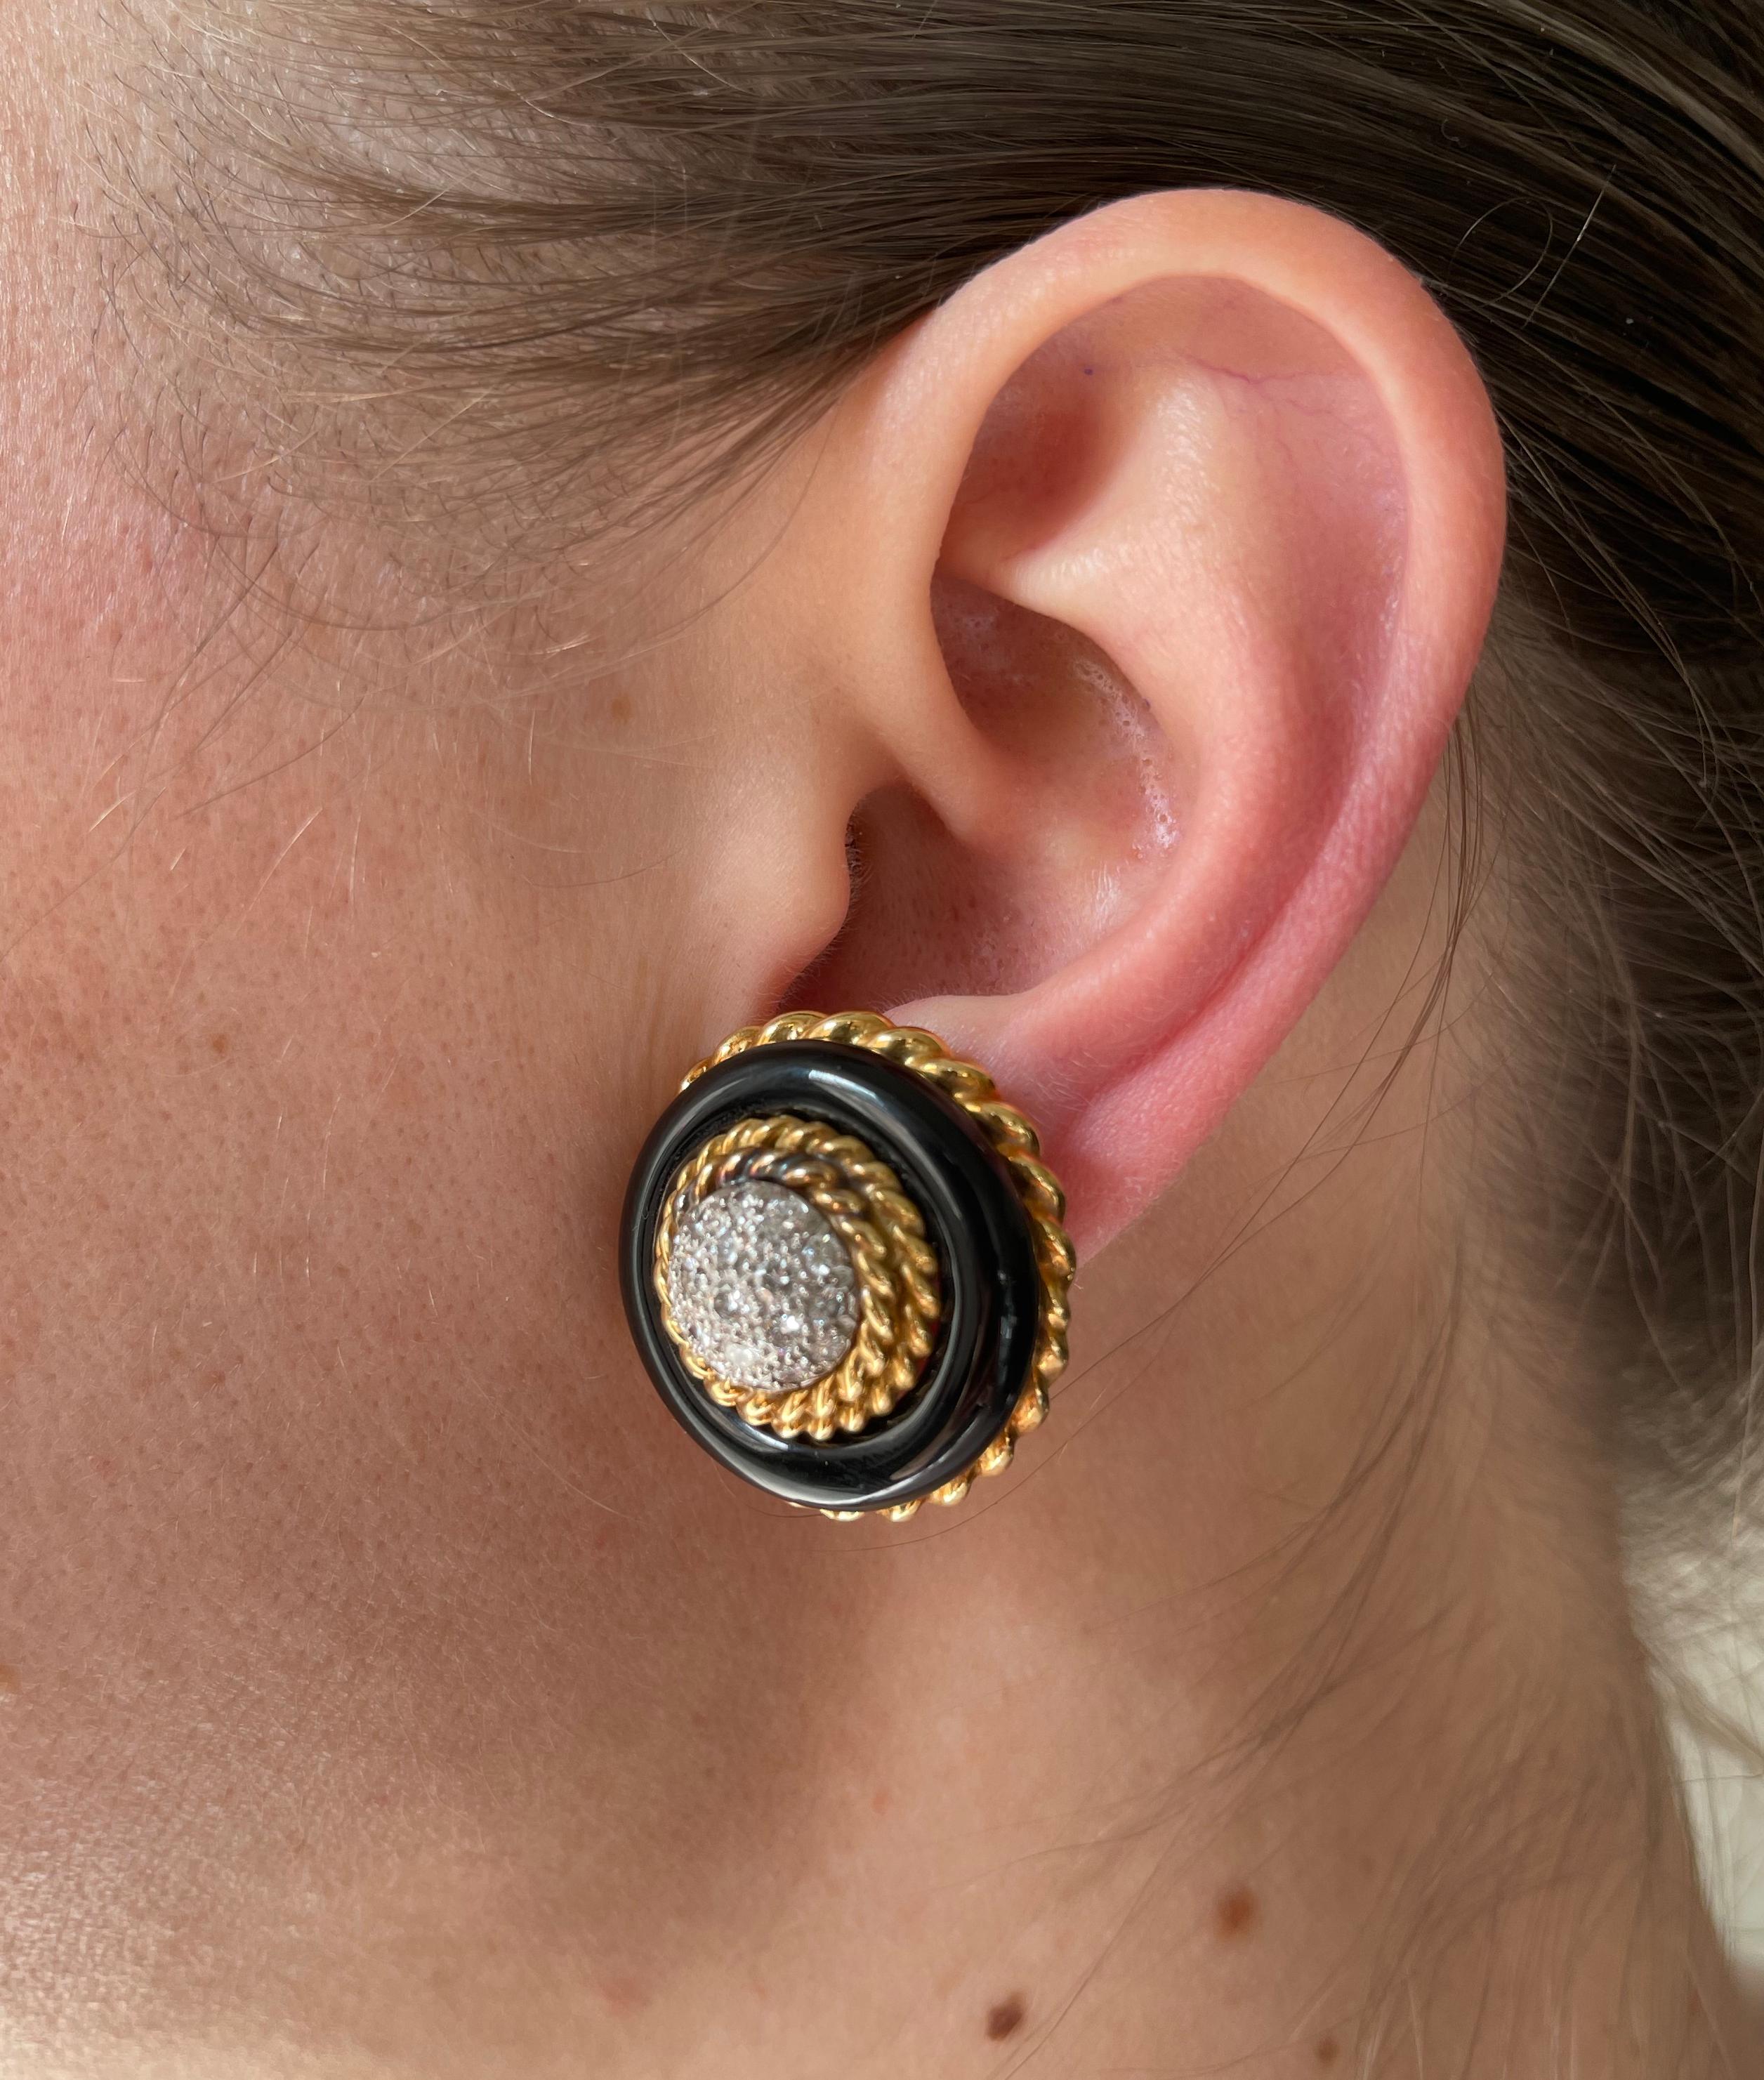 10mm vca earrings when worn